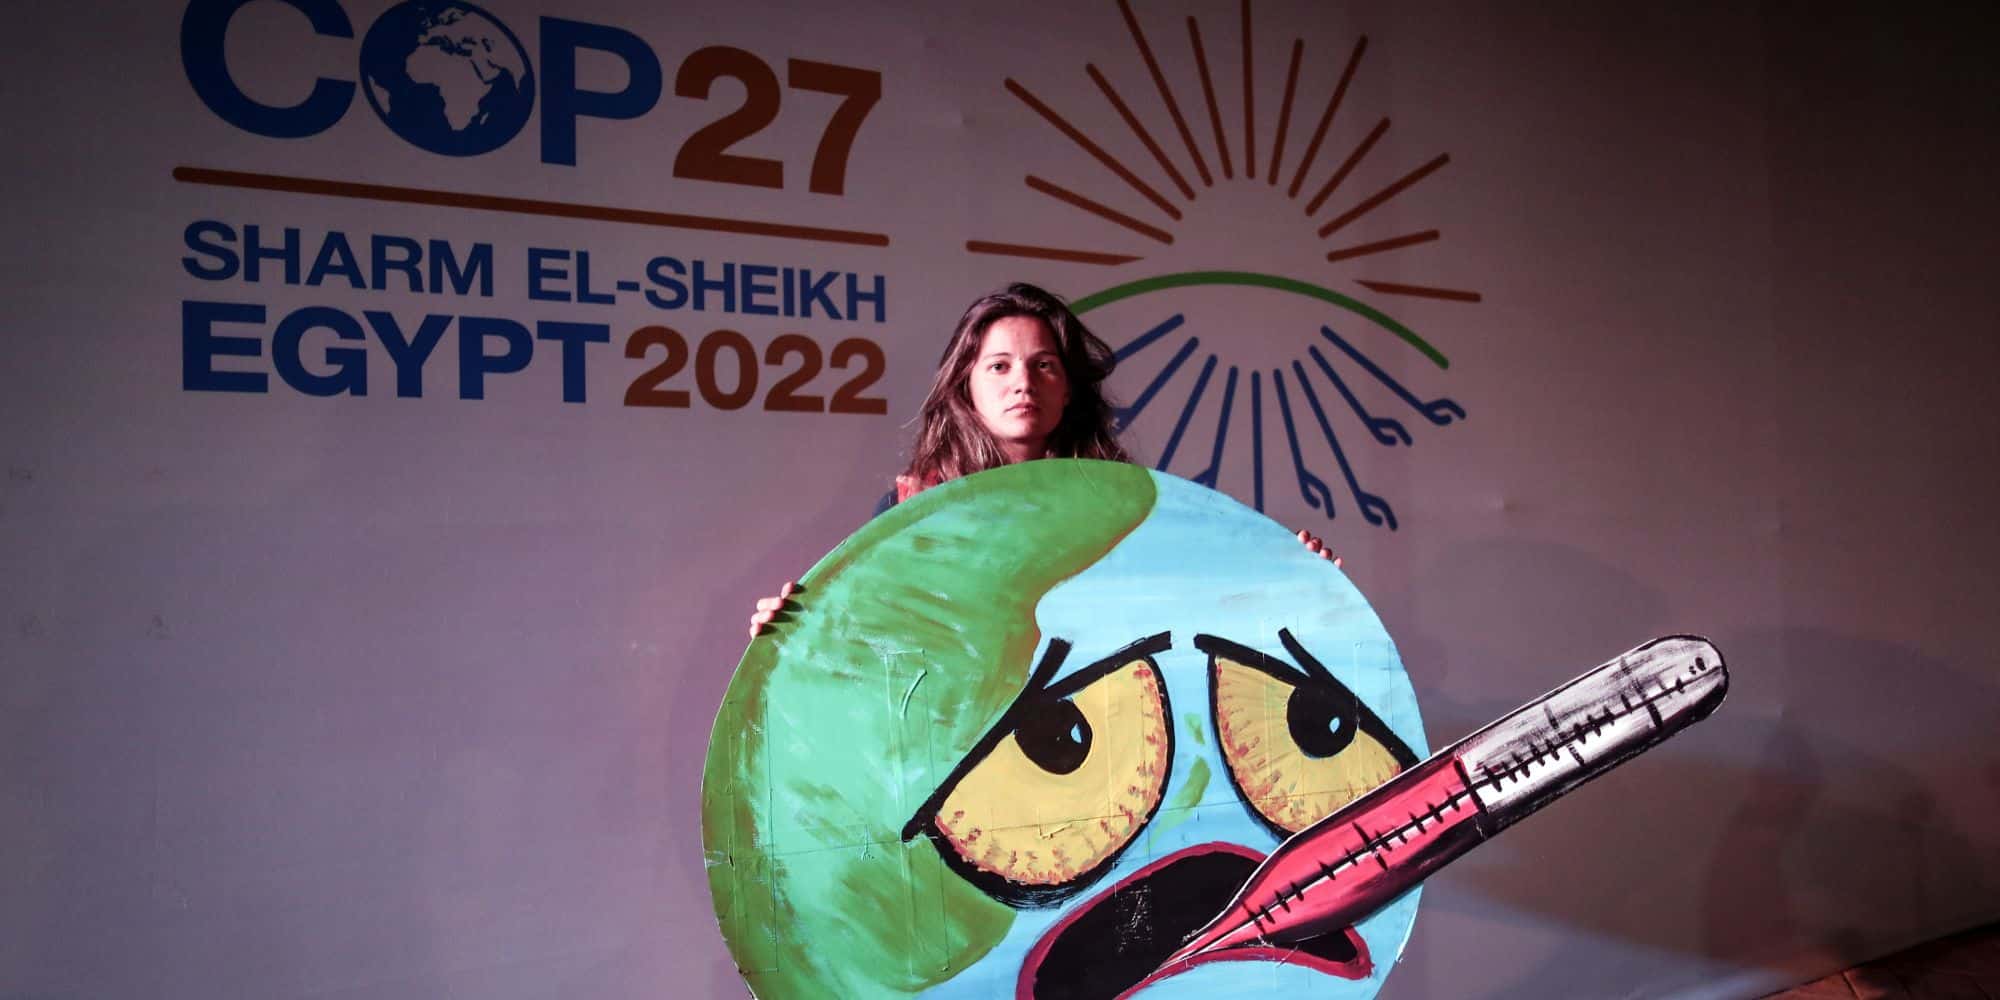 Σύσκεψη της COP27 στην Αίγυπτο